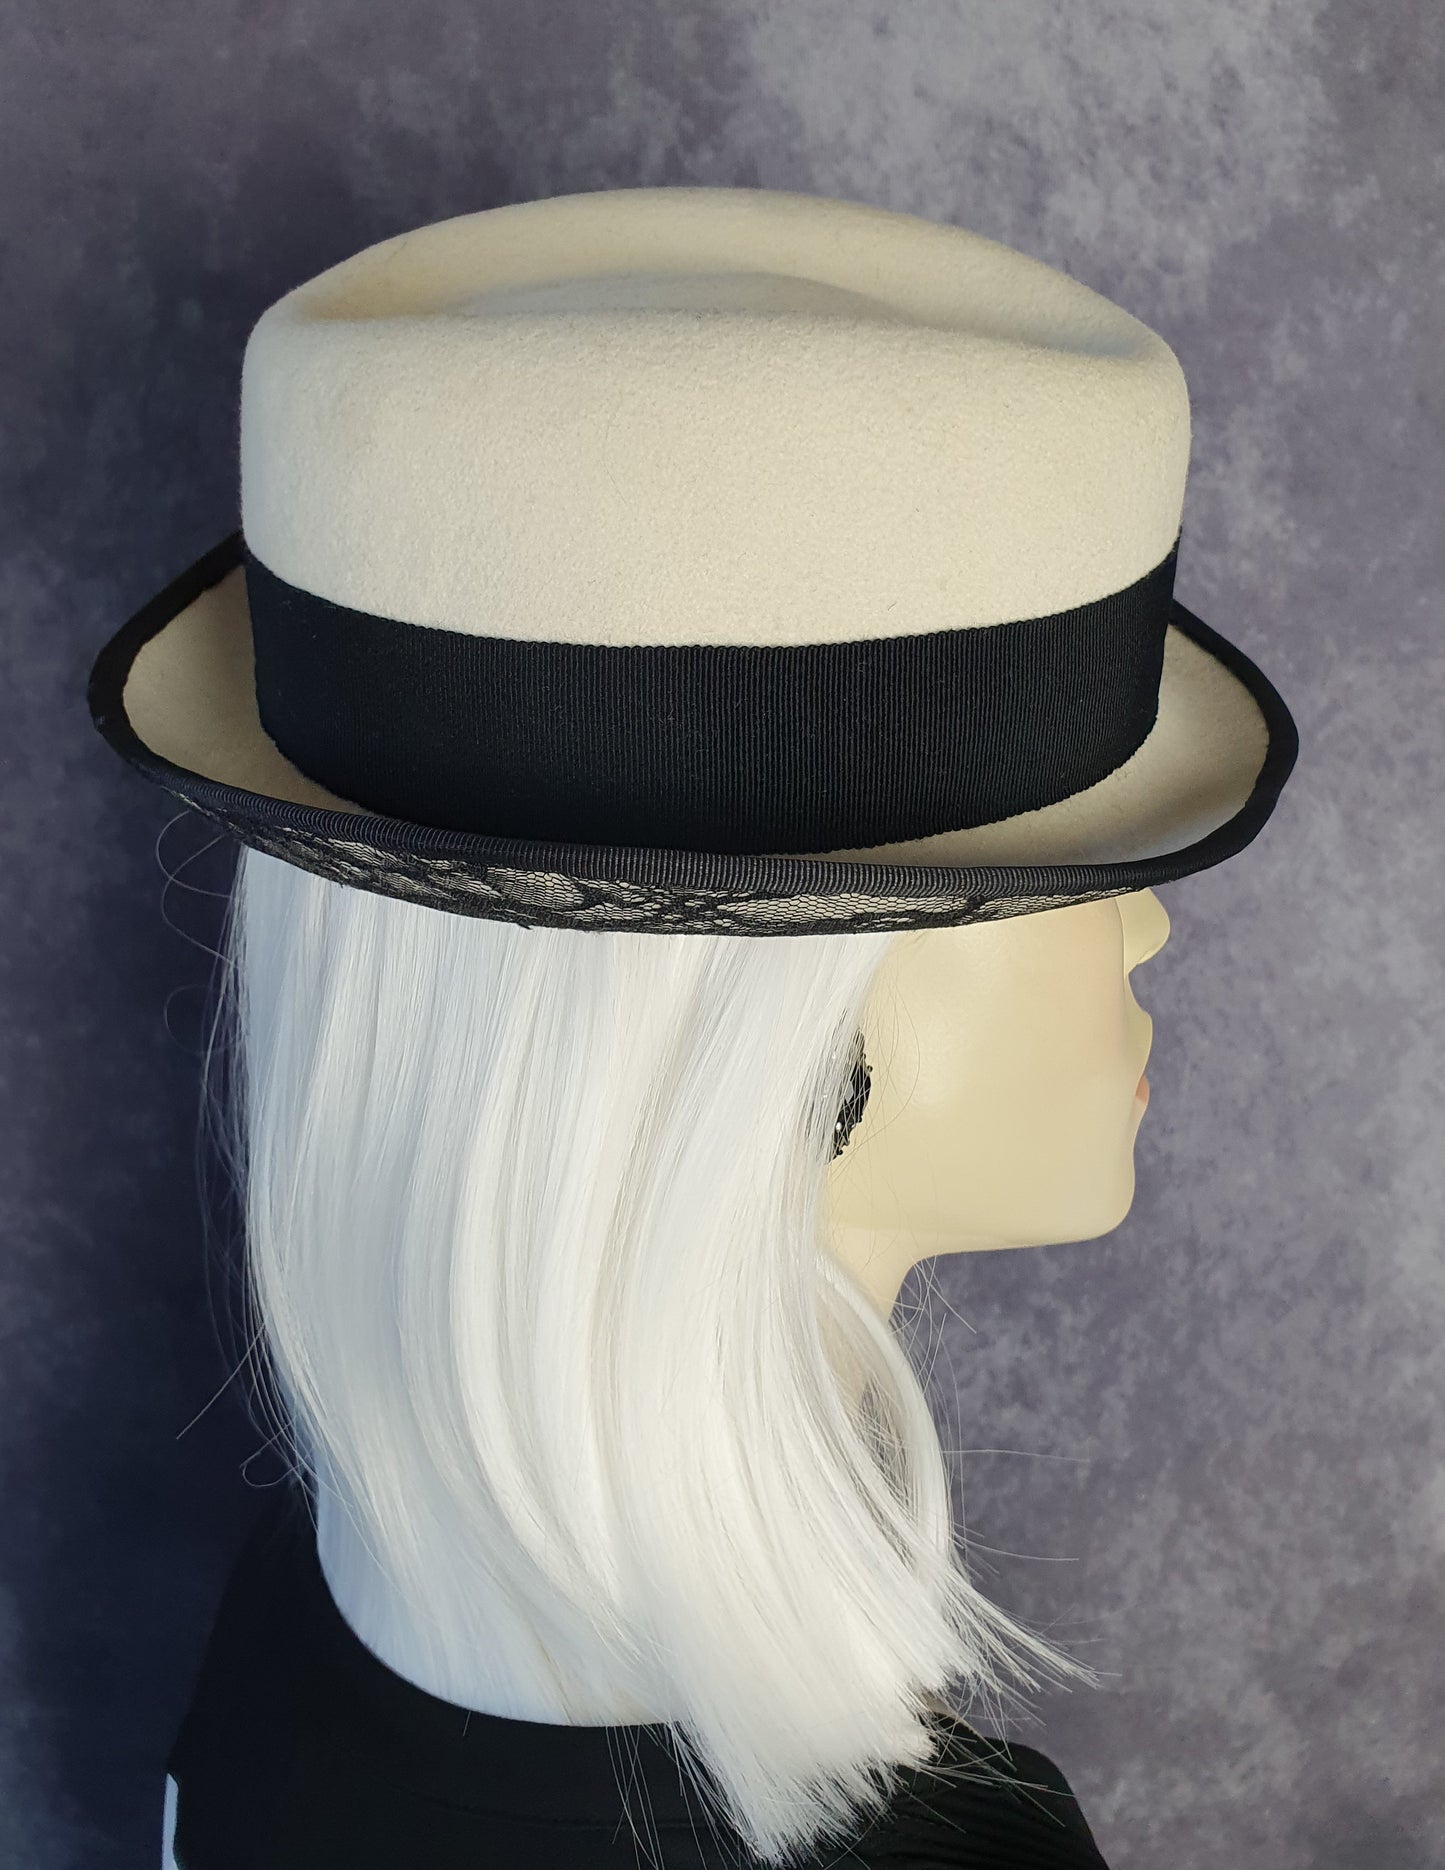 Handgemaakte vilten hoed zwart en wit, elegante vintage hoed fedora met kant -Perfect voor de herfst & winter en speciale gelegenheden